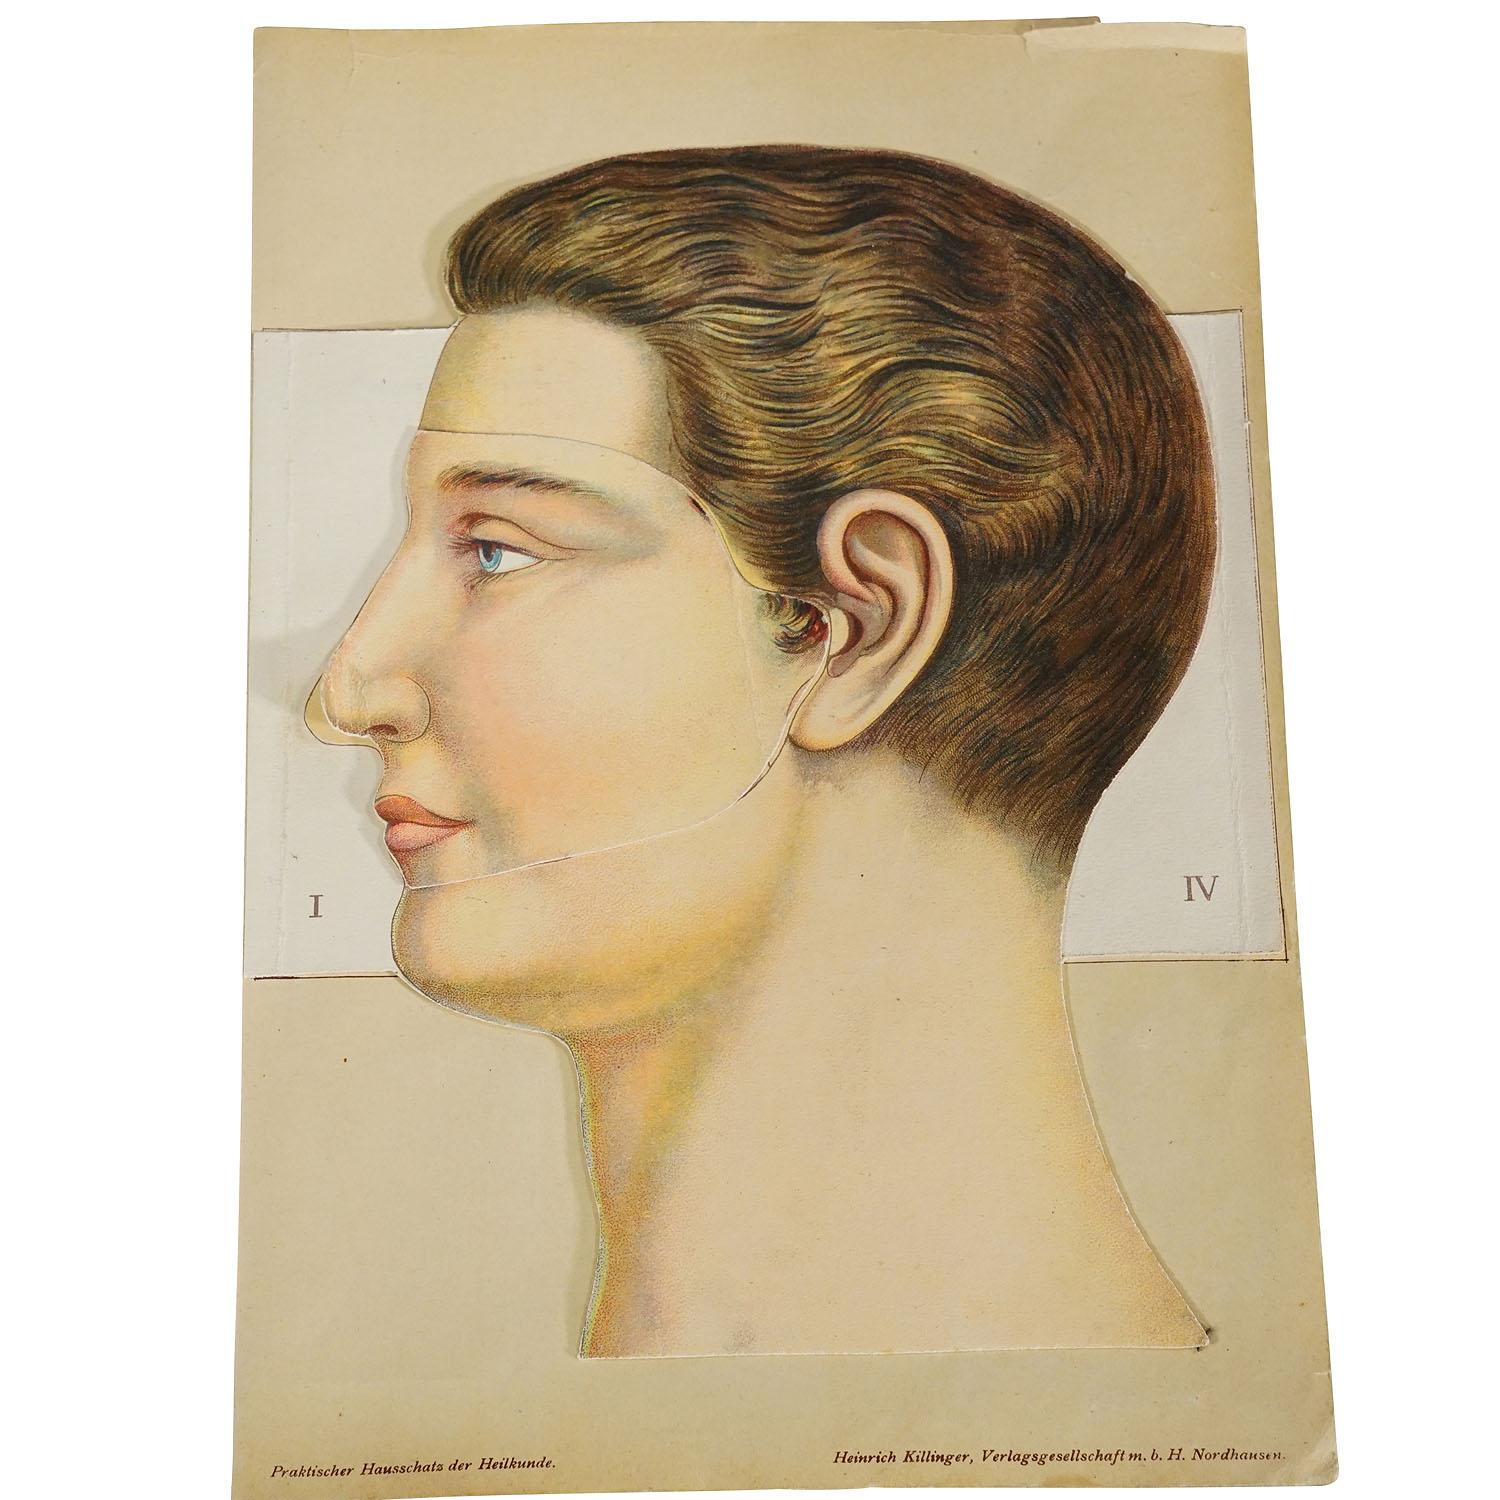 Broche anatomique pliable des années 1900 représentant la tête humaine

Rare brochure illustrant l'anatomie de la tête humaine. Représentation multicolore très détaillée de plusieurs couches de la tête. En pliant les multiples couches, la structure